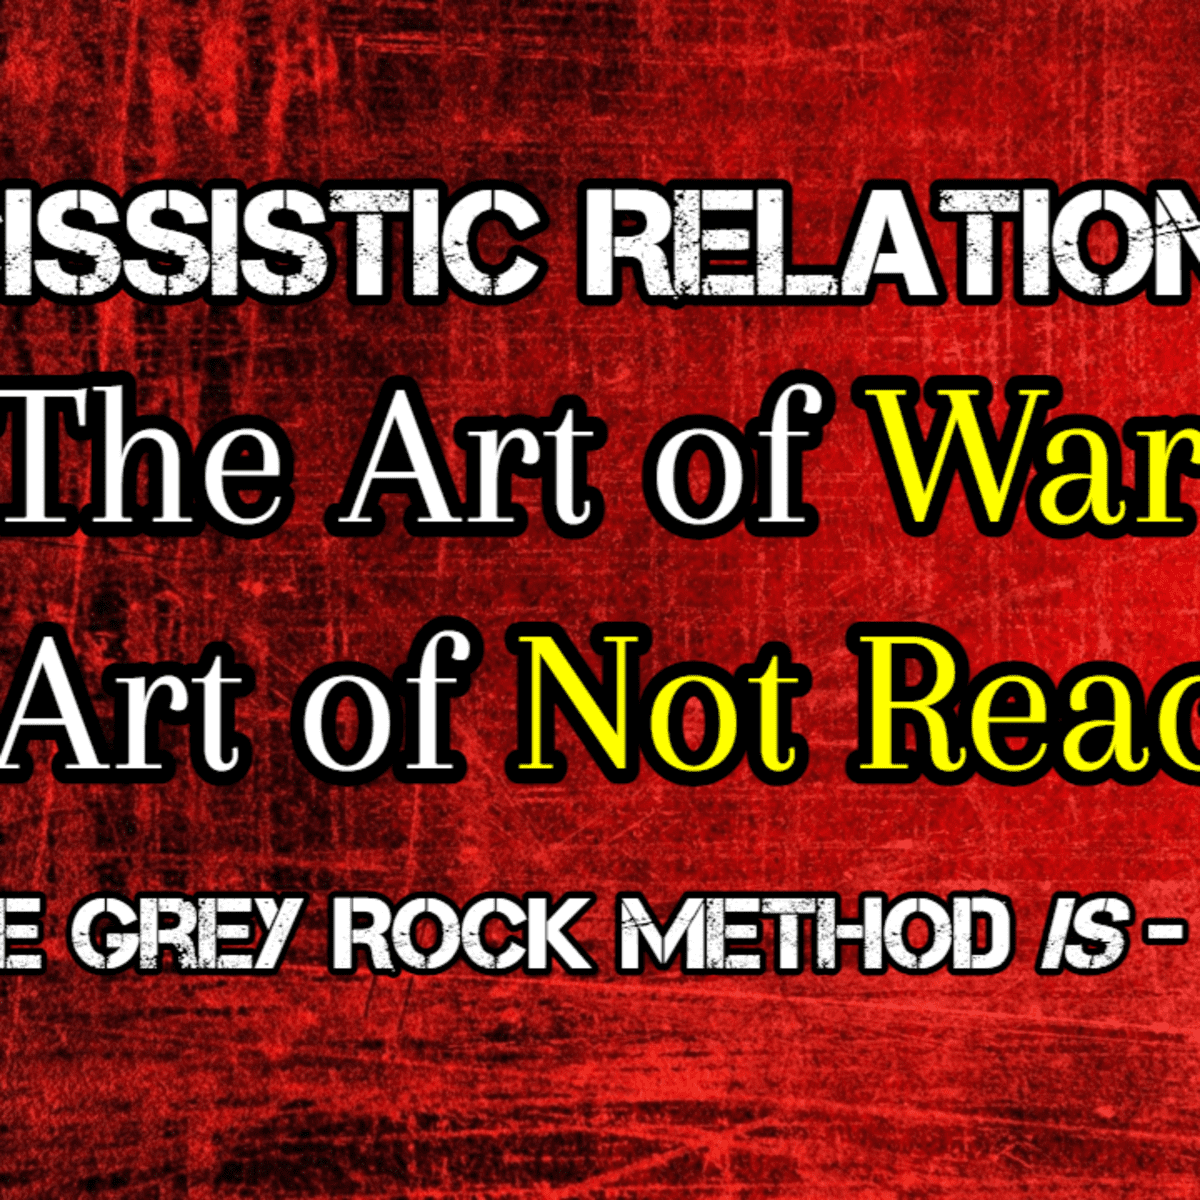 Rock method grey Grey Rock